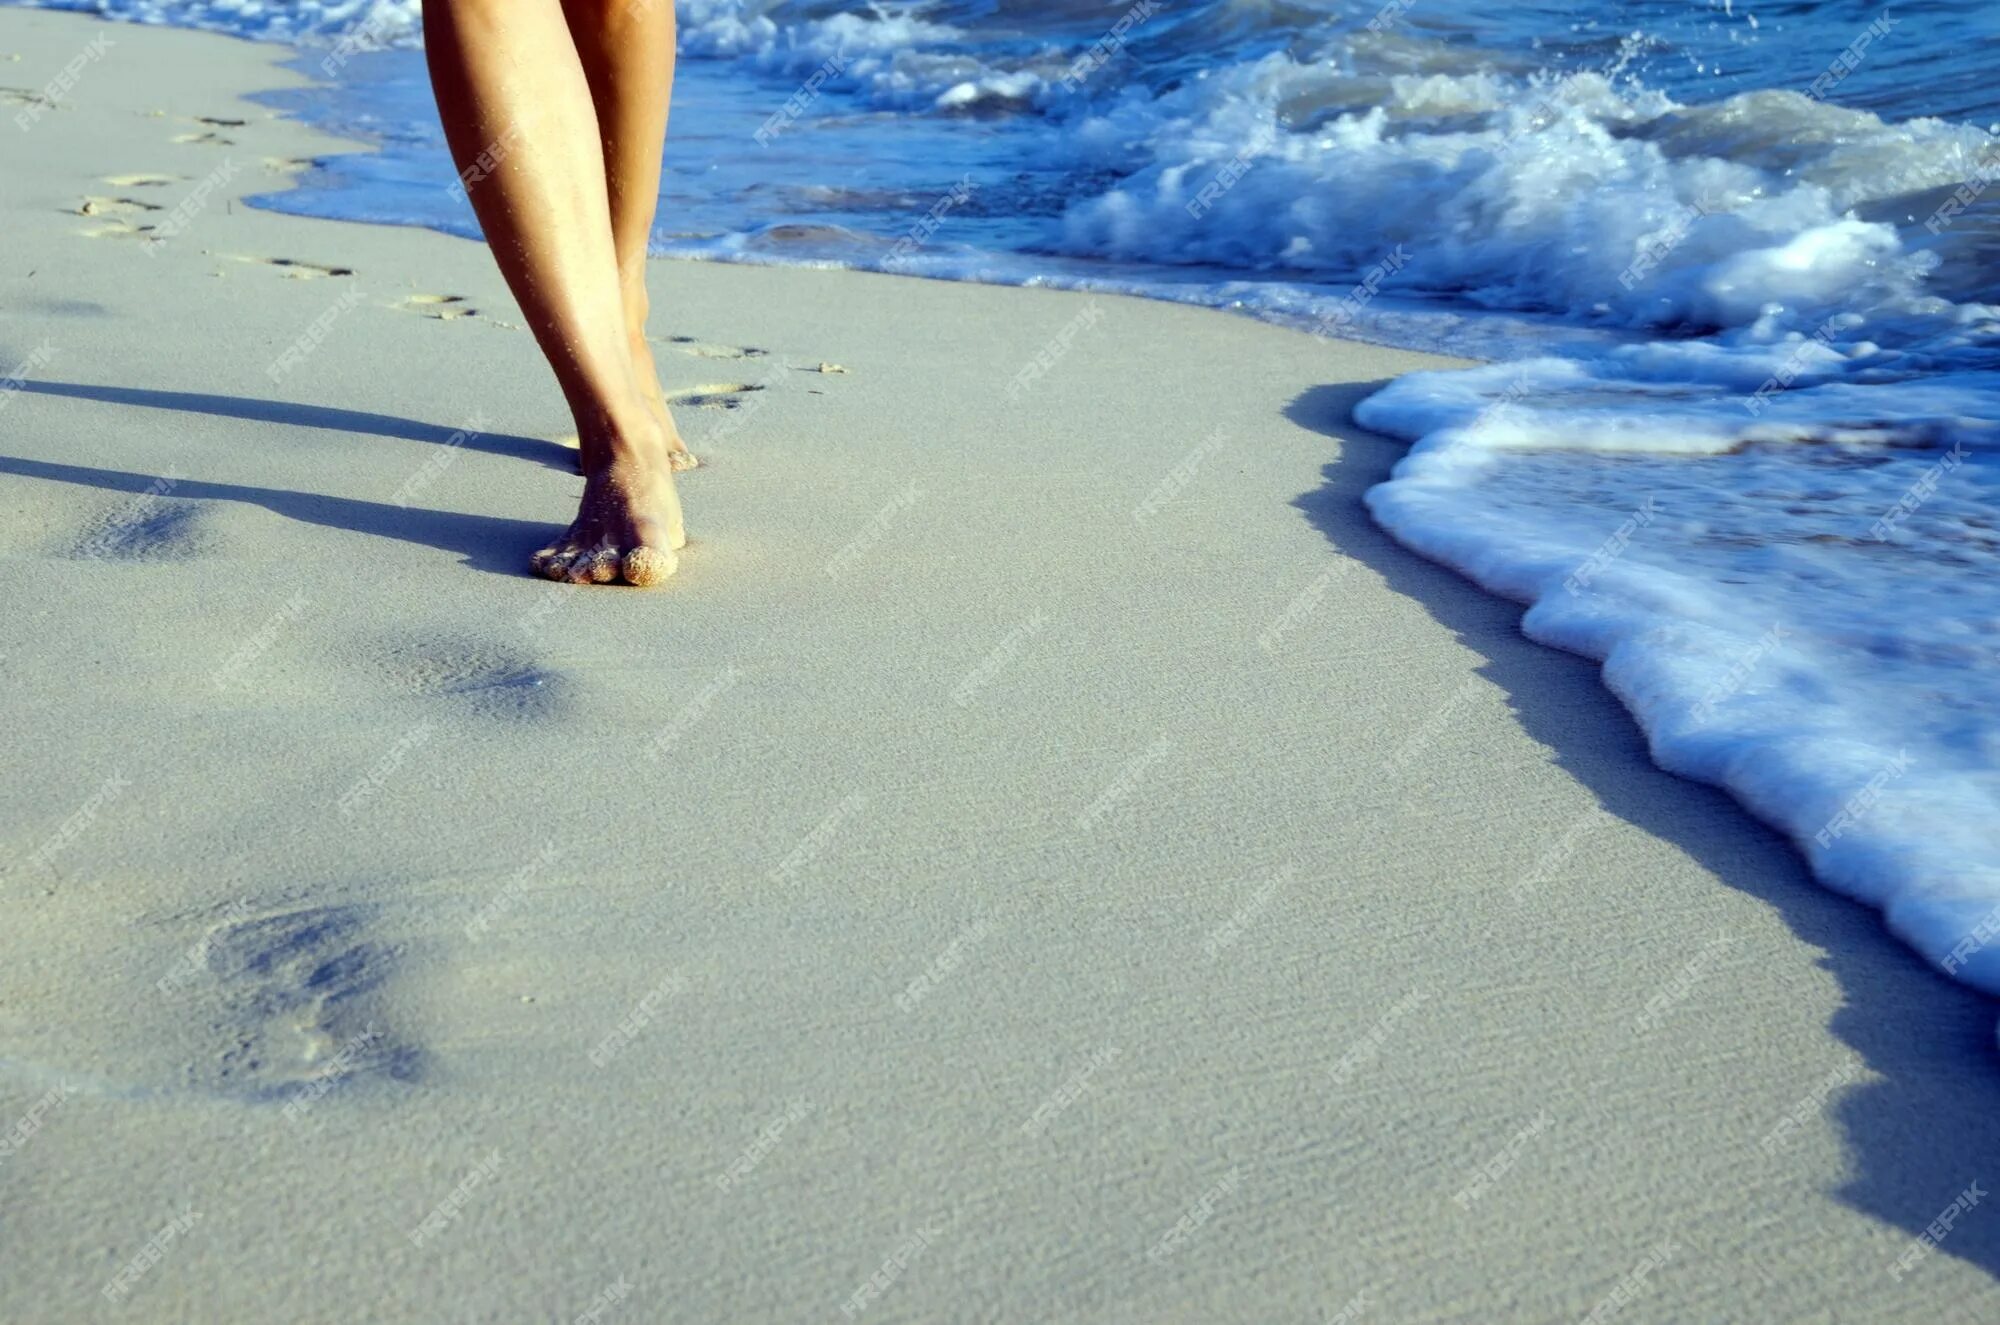 Следы в виде воды. Следы на пляже. Следы на песке. Песок без следов. Вода смывает следы.